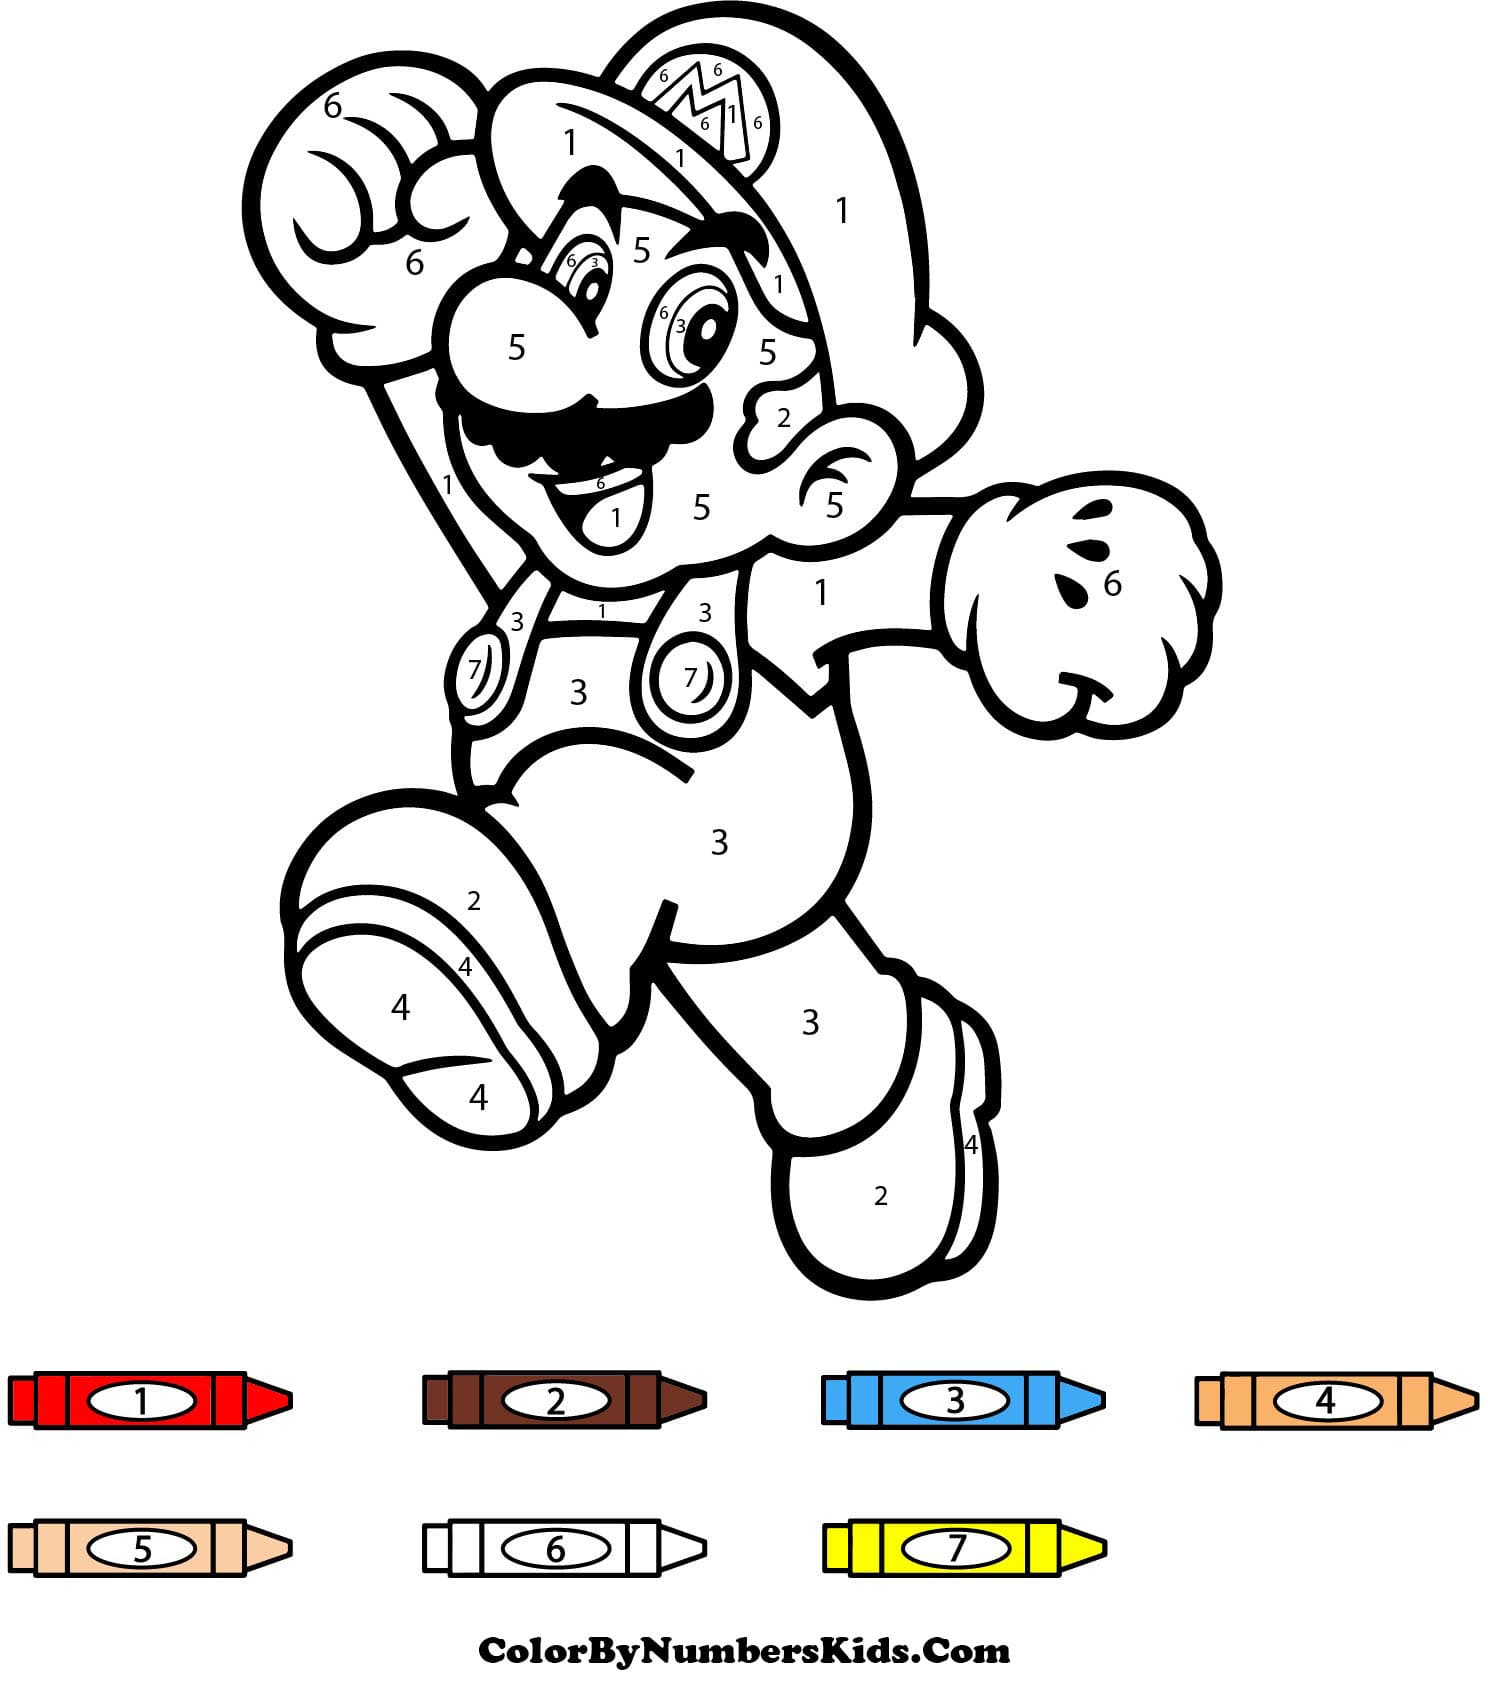 Happy Mario Color By Number